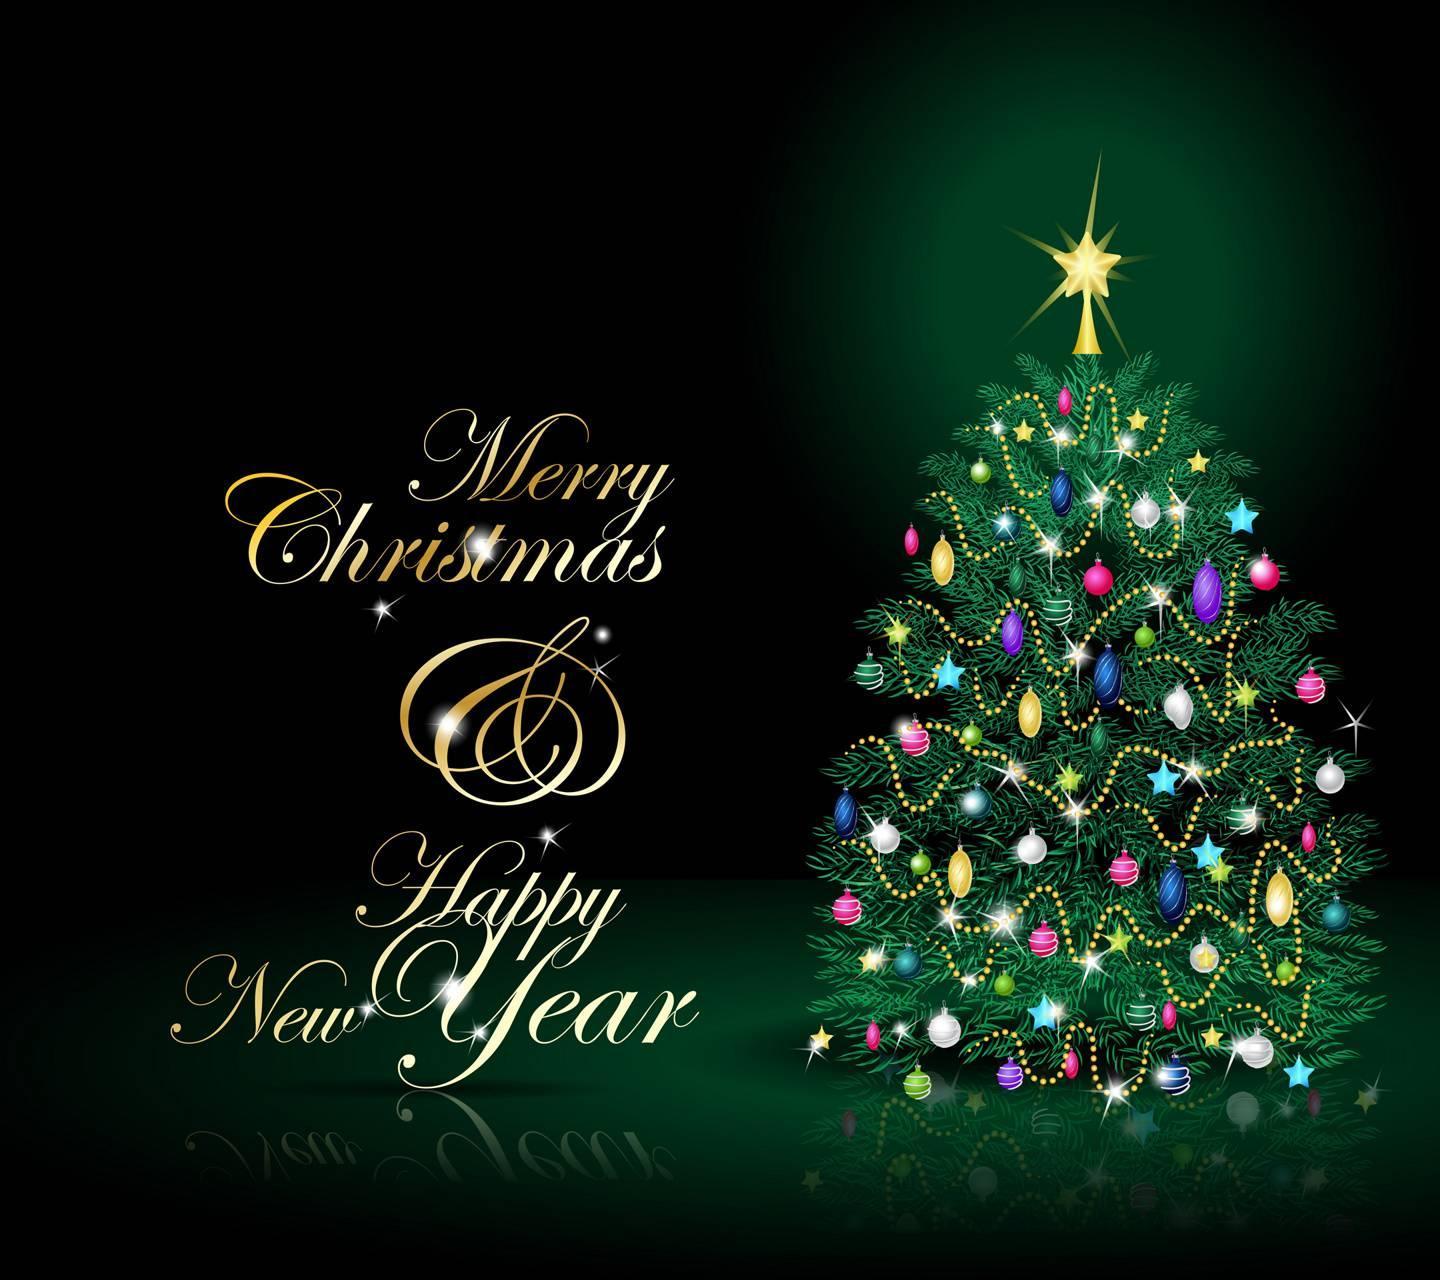 merry christmas 2020 wishes Merry Christmas Wishes 2020 merry christmas 2020 wishes